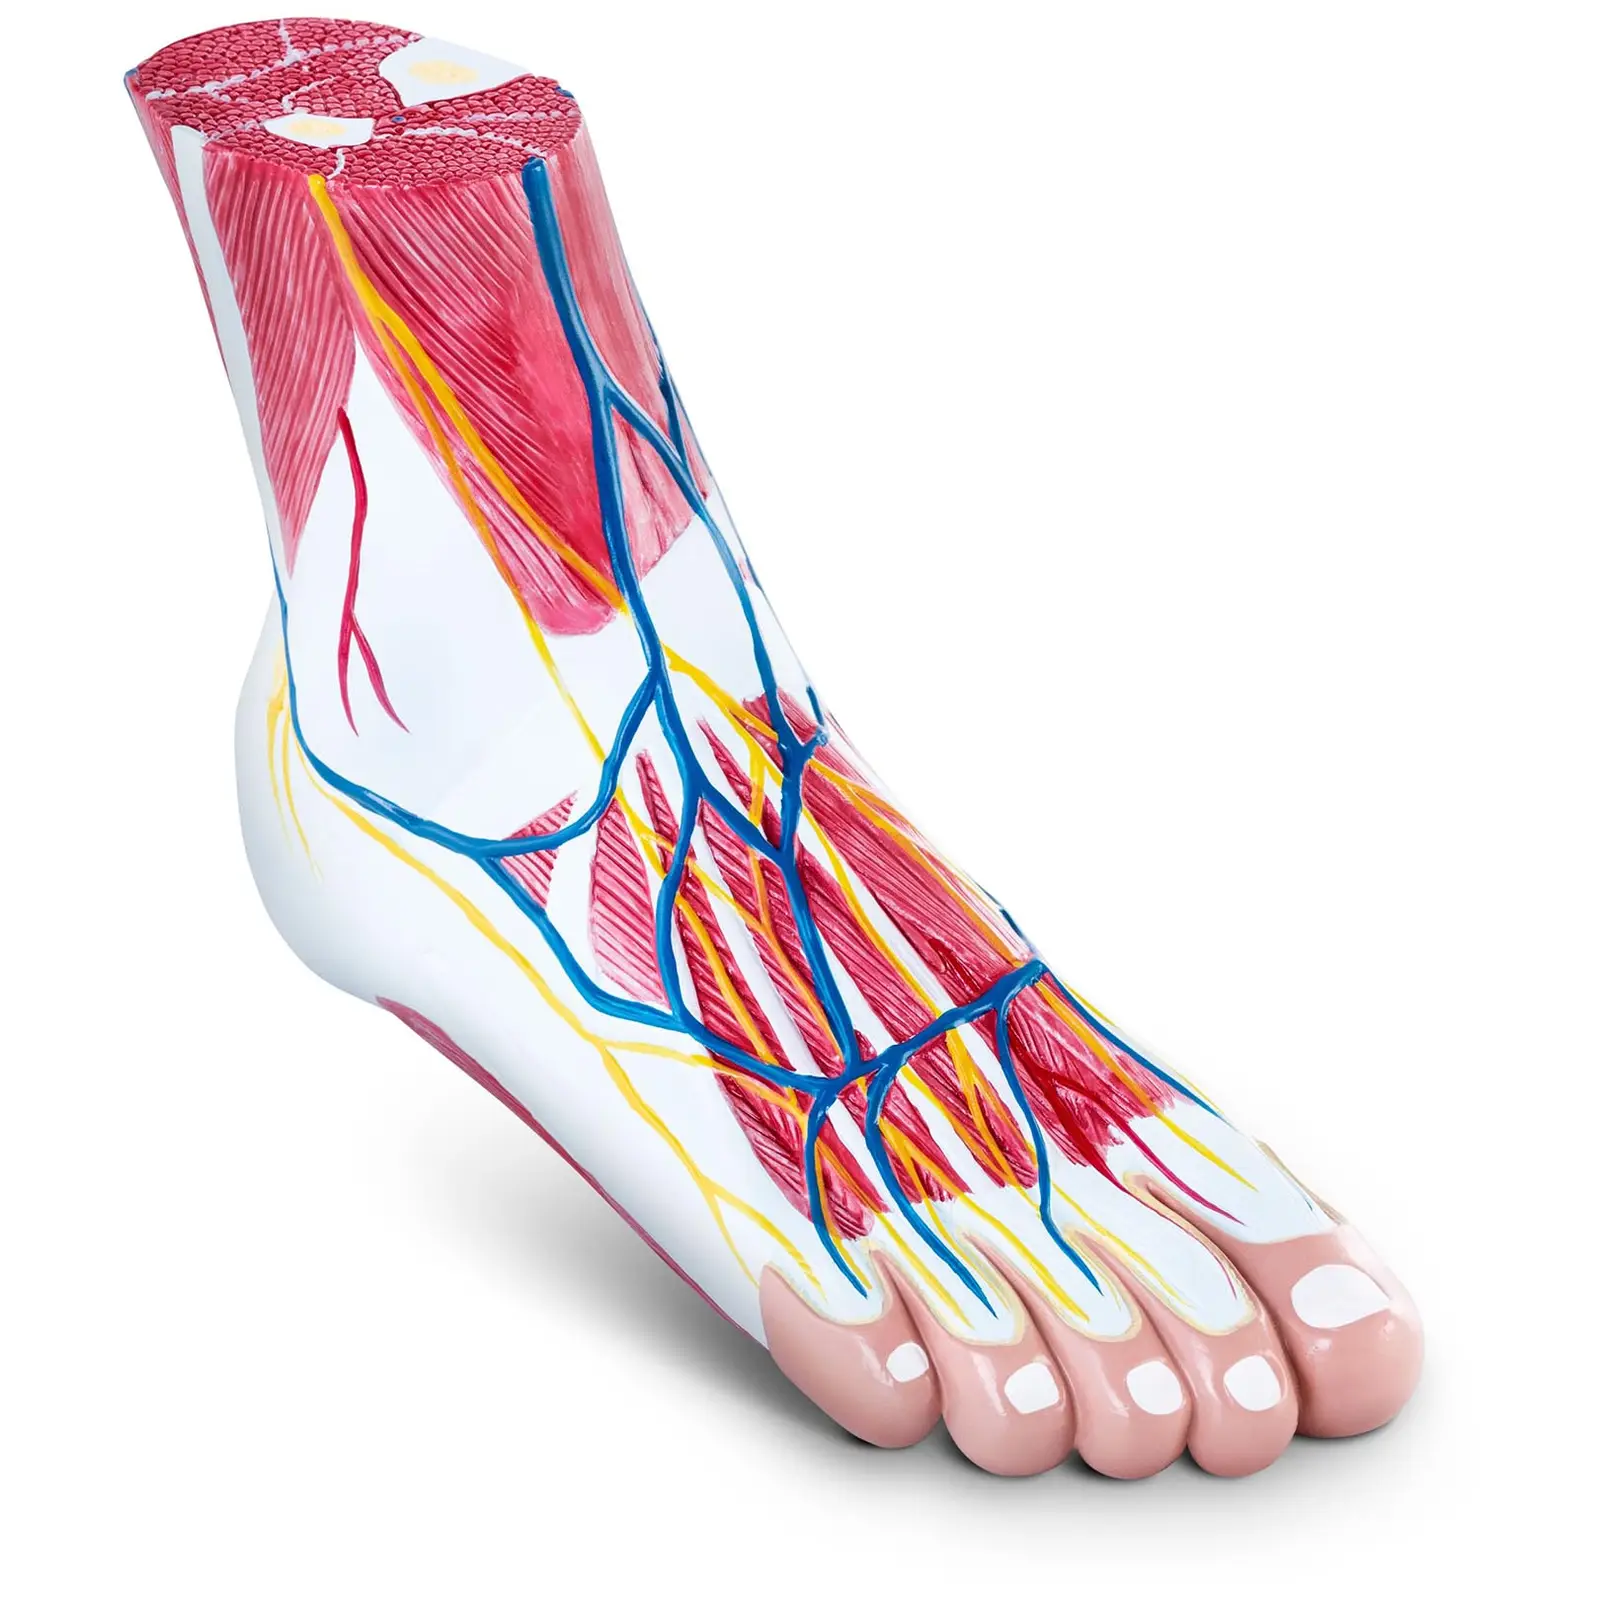 Modello anatomico del piede - Tre parti - Grandezza naturale - Degenerazione muscolare